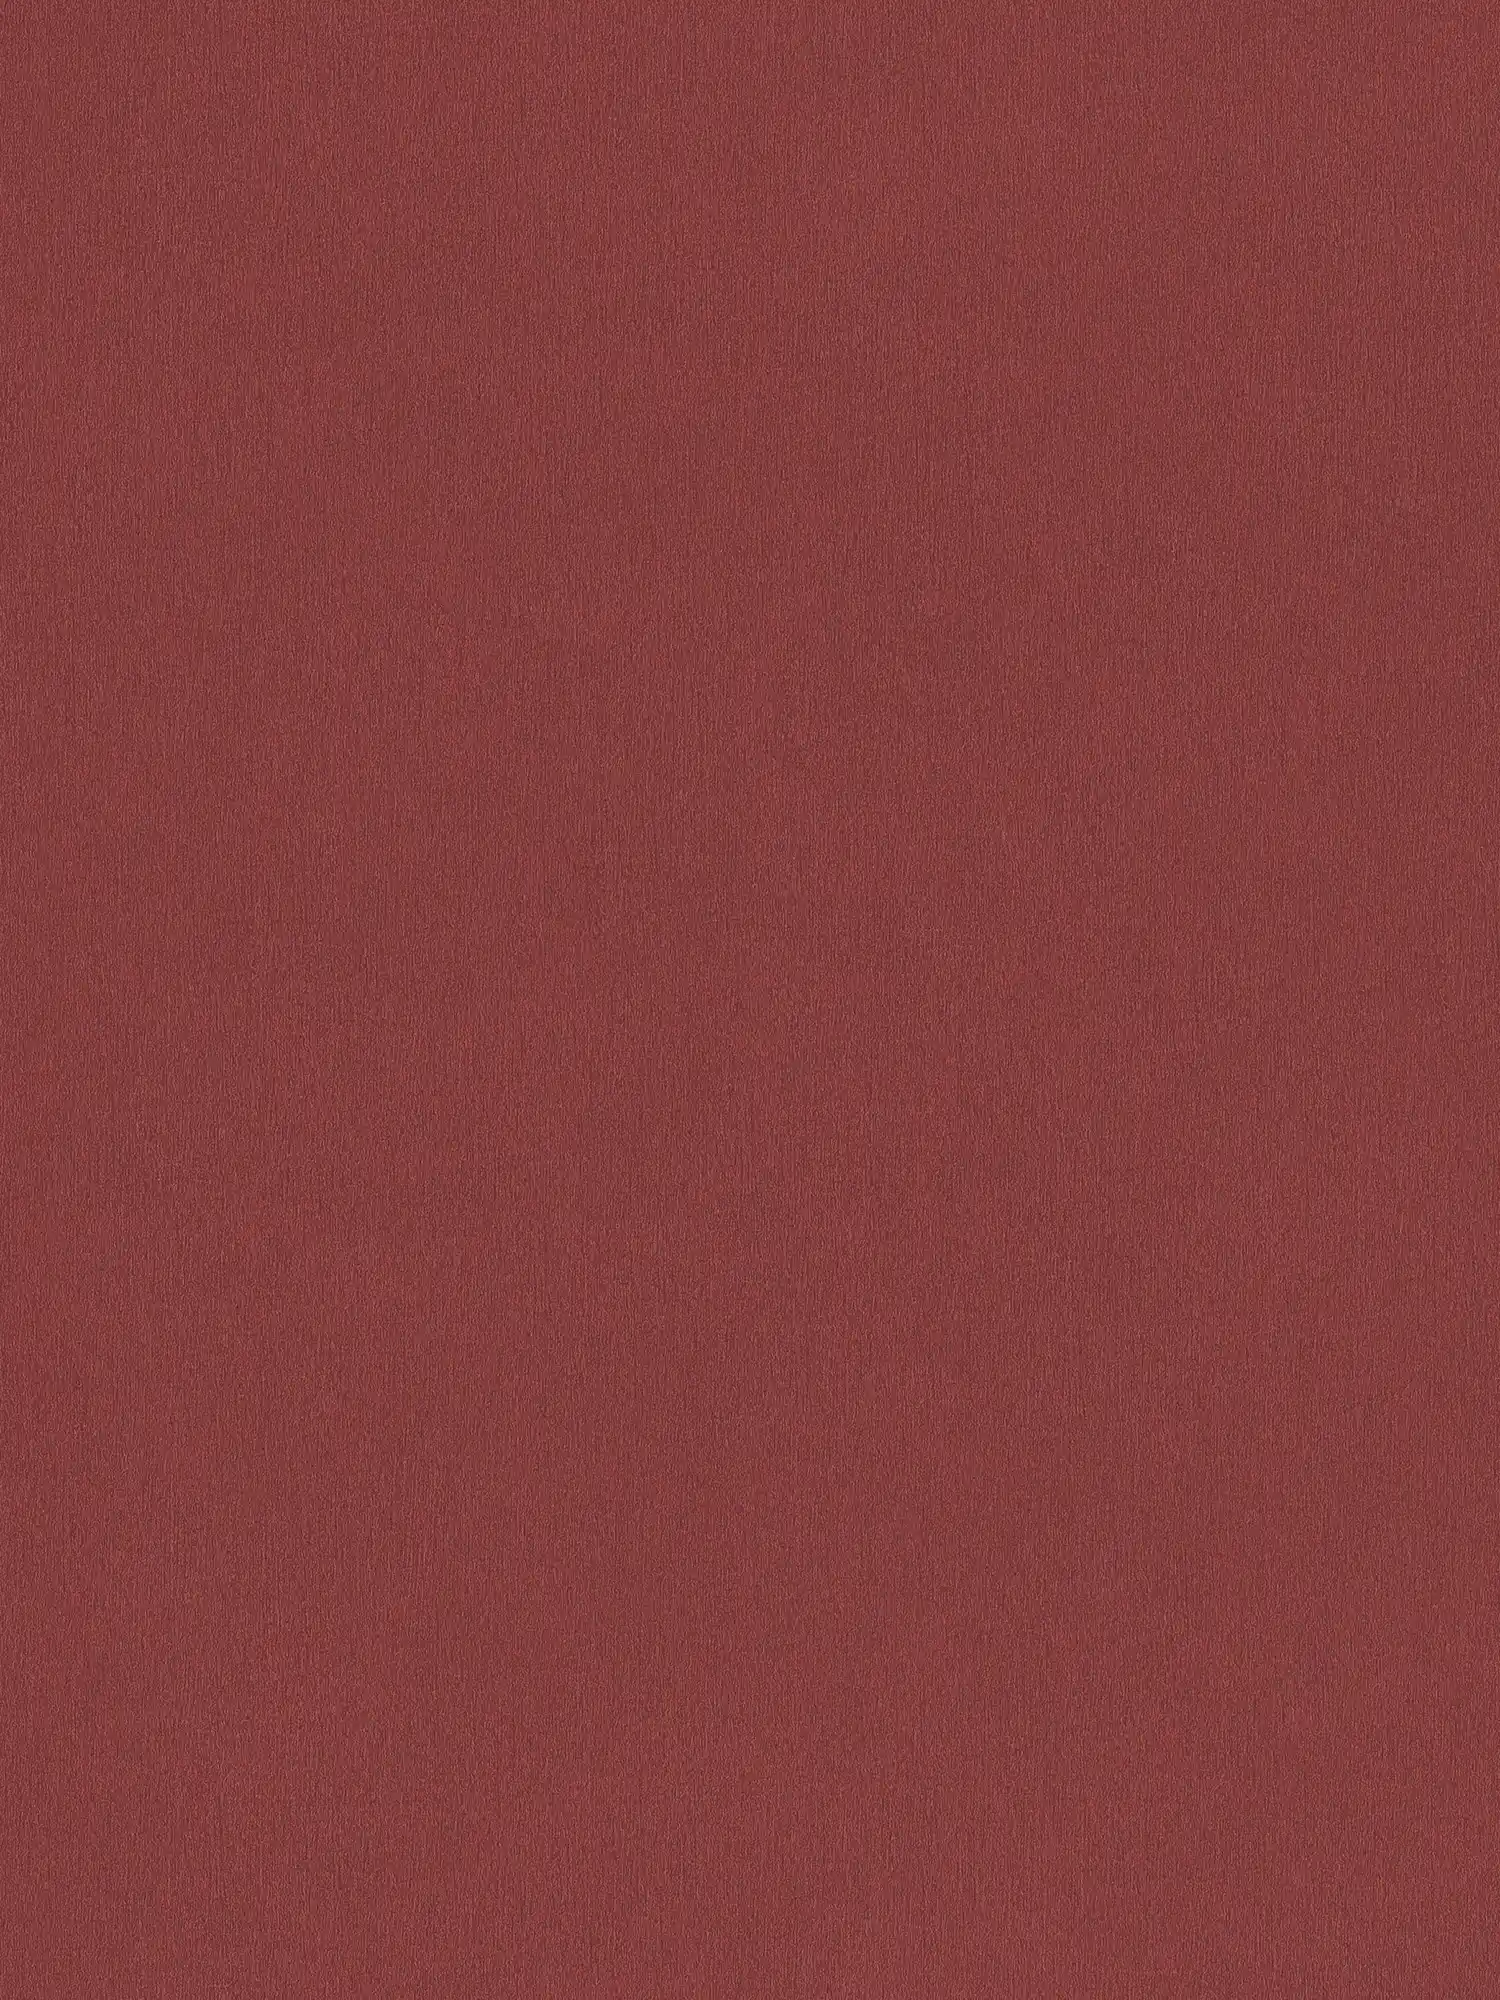 papel pintado rojo burdeos con estructura de color - rojo oscuro
